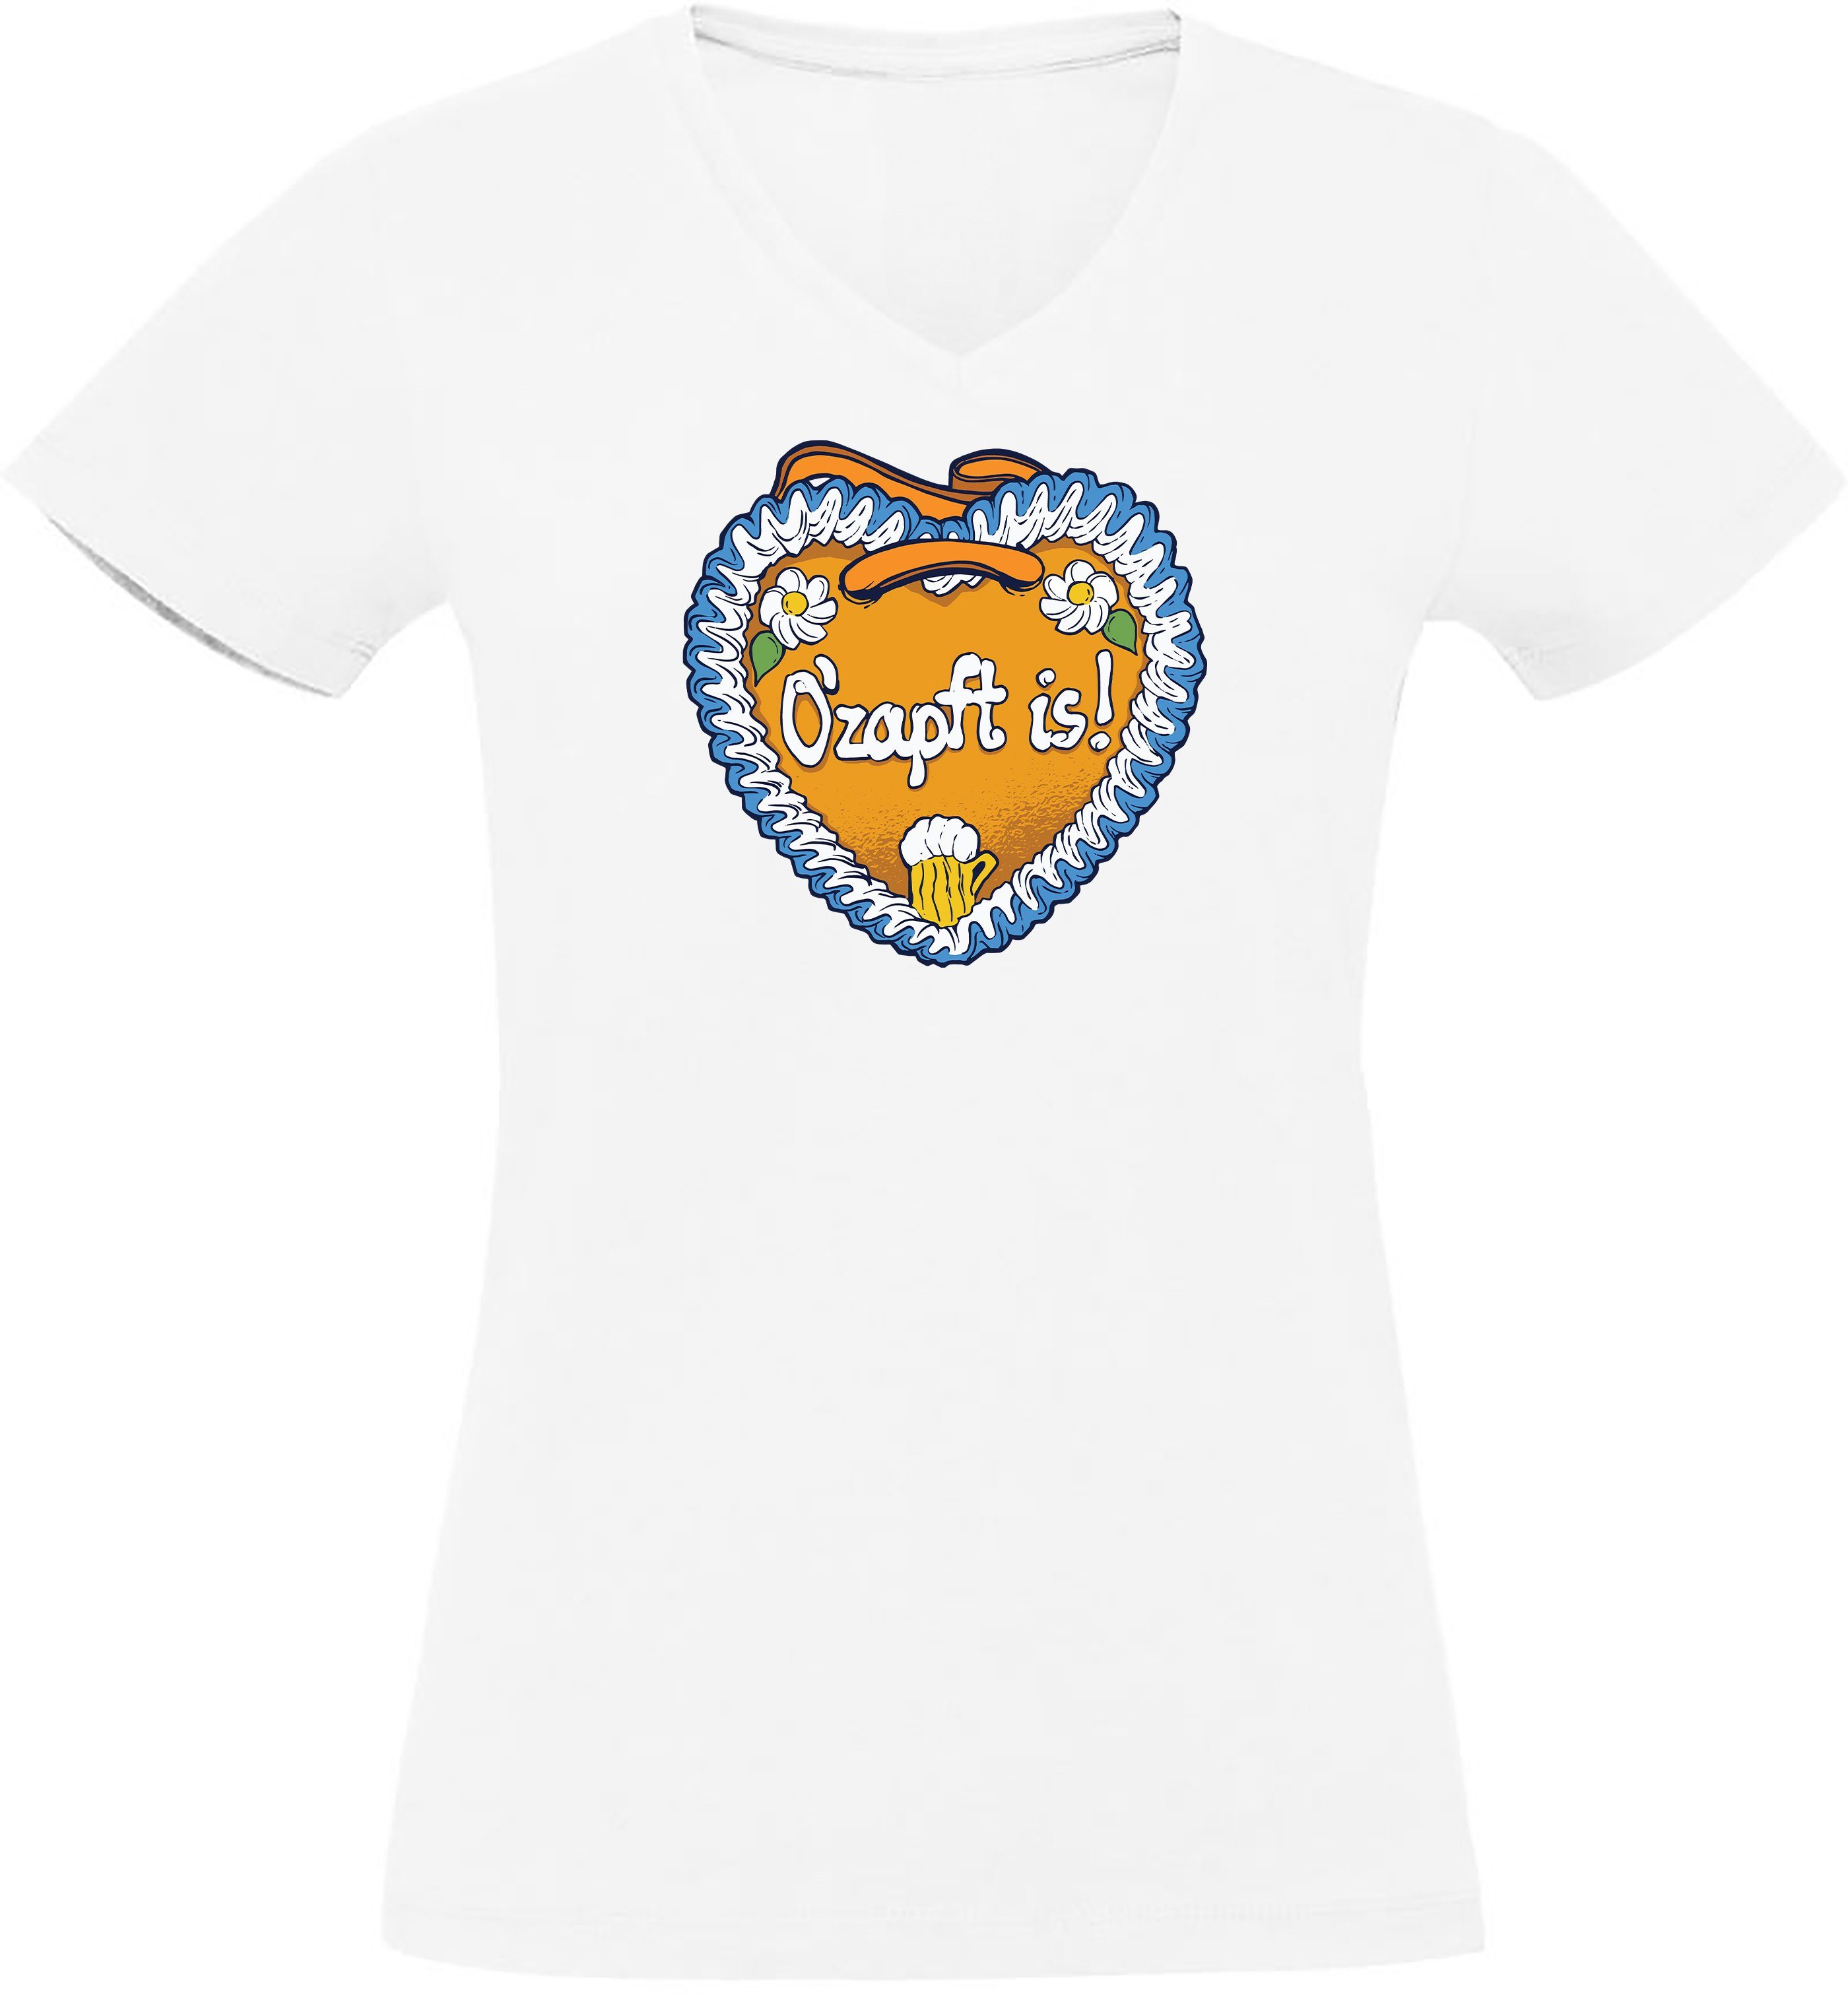 Damen - is T-Shirt i313 Shirt O´Zapft Lebkuchen Print Herz mit Fit, V-Ausschnitt T-Shirt Slim MyDesign24 weiss Oktoberfest